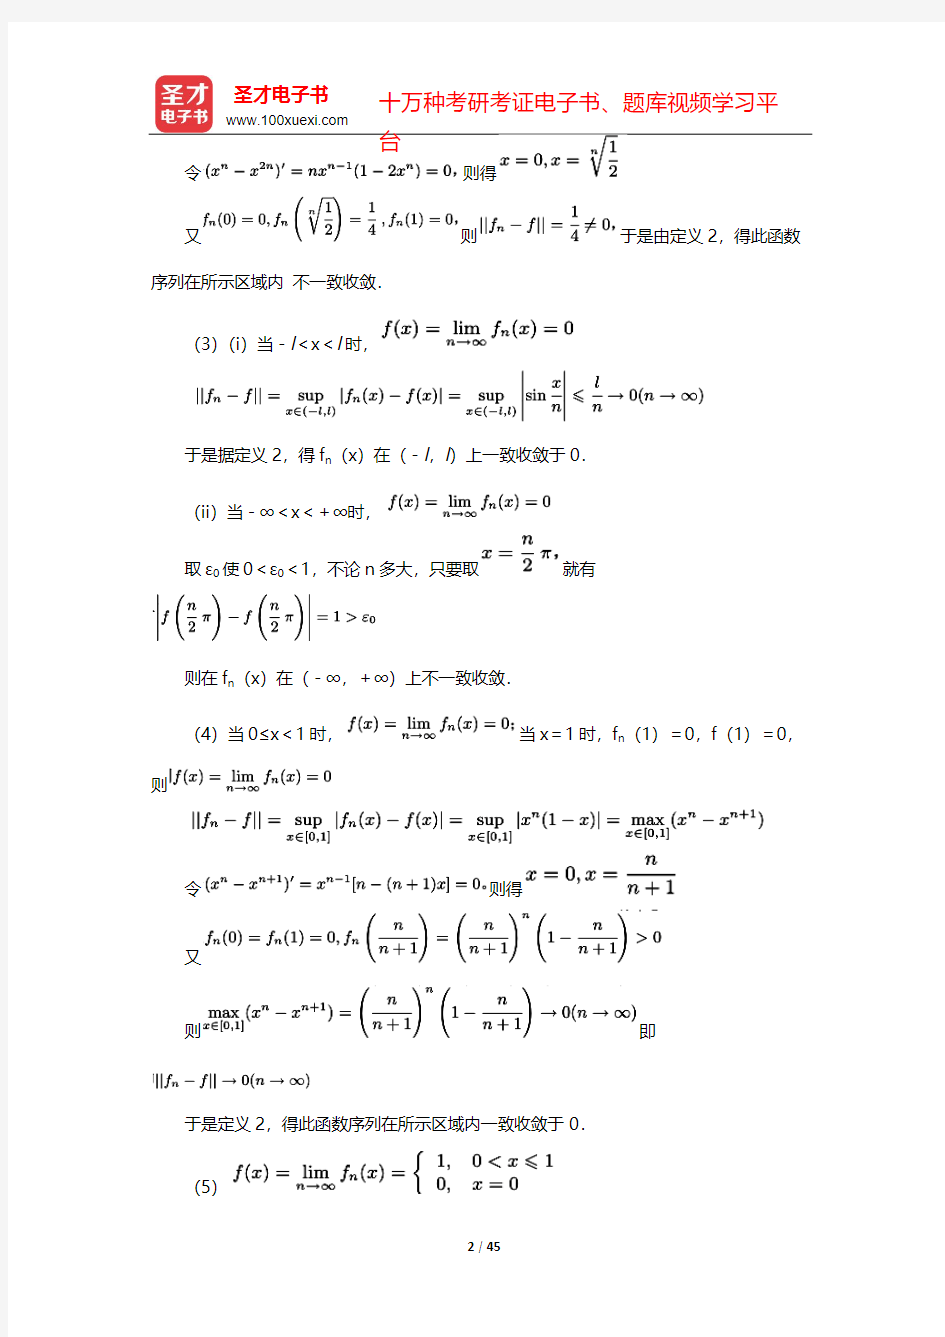 复旦大学数学系《数学分析》(第3版)(下册)课后习题-级   数-函数项级数【圣才出品】